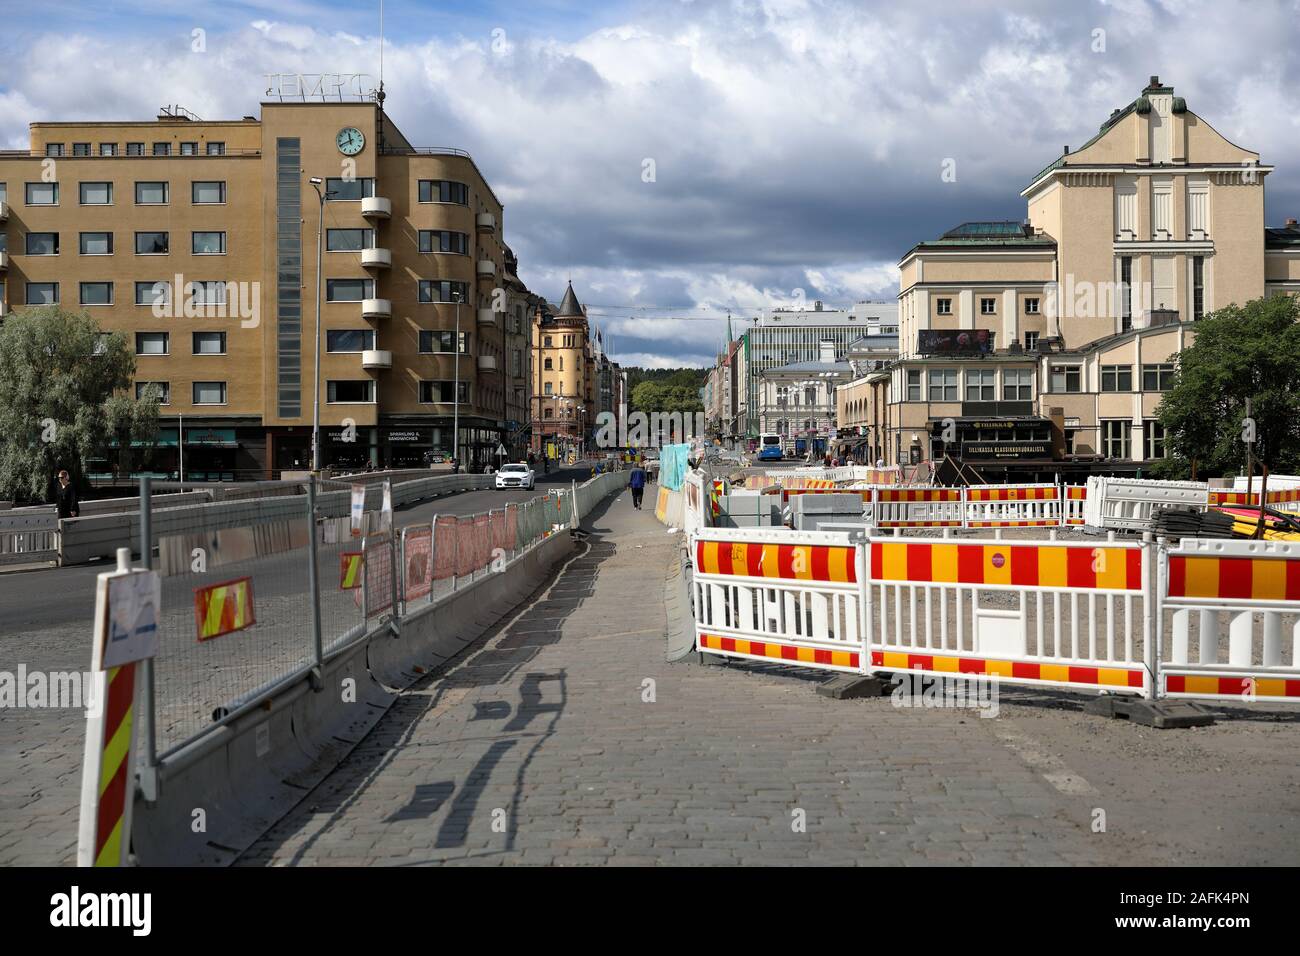 La construction d'un réseau de tramway est affectant la circulation dans la rue principale de Hämeenkatu. À long terme, le réseau bénéficiera les transports publics. Banque D'Images